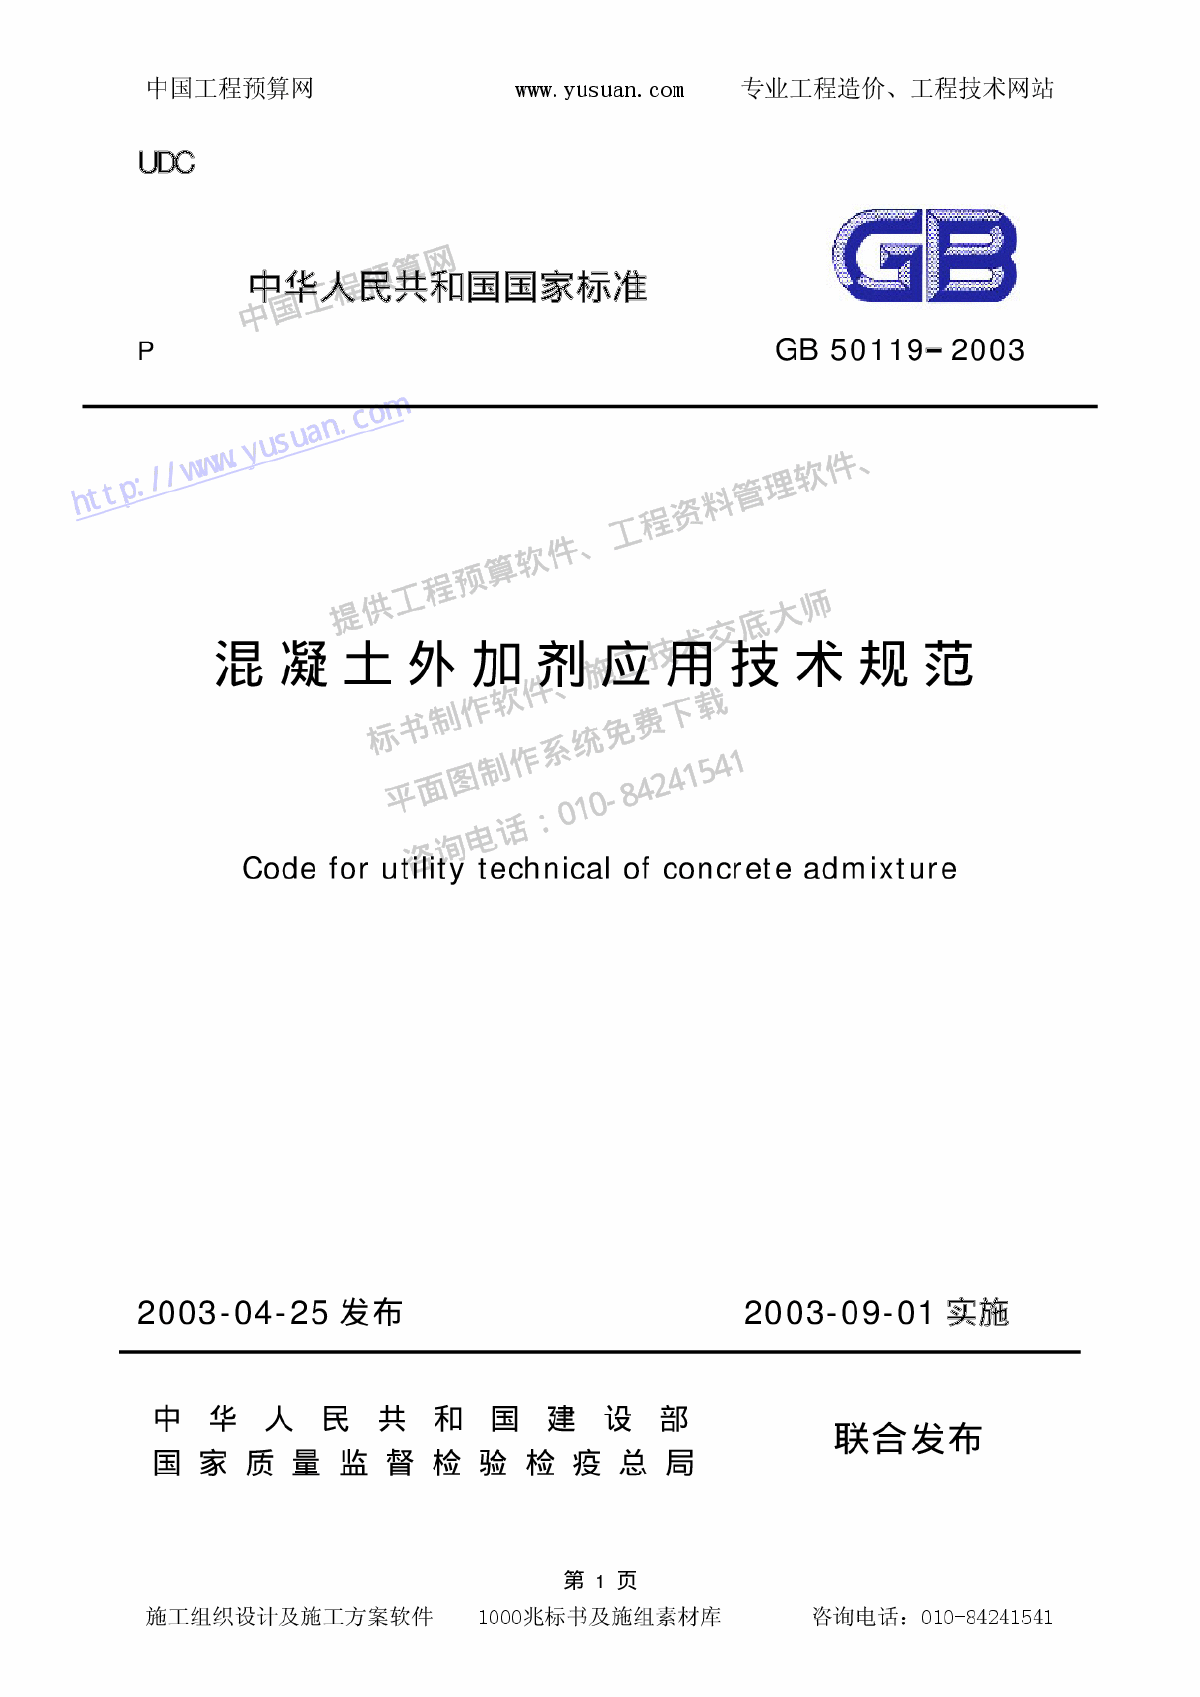 GB50119-2003混凝土外加剂应用技术规范